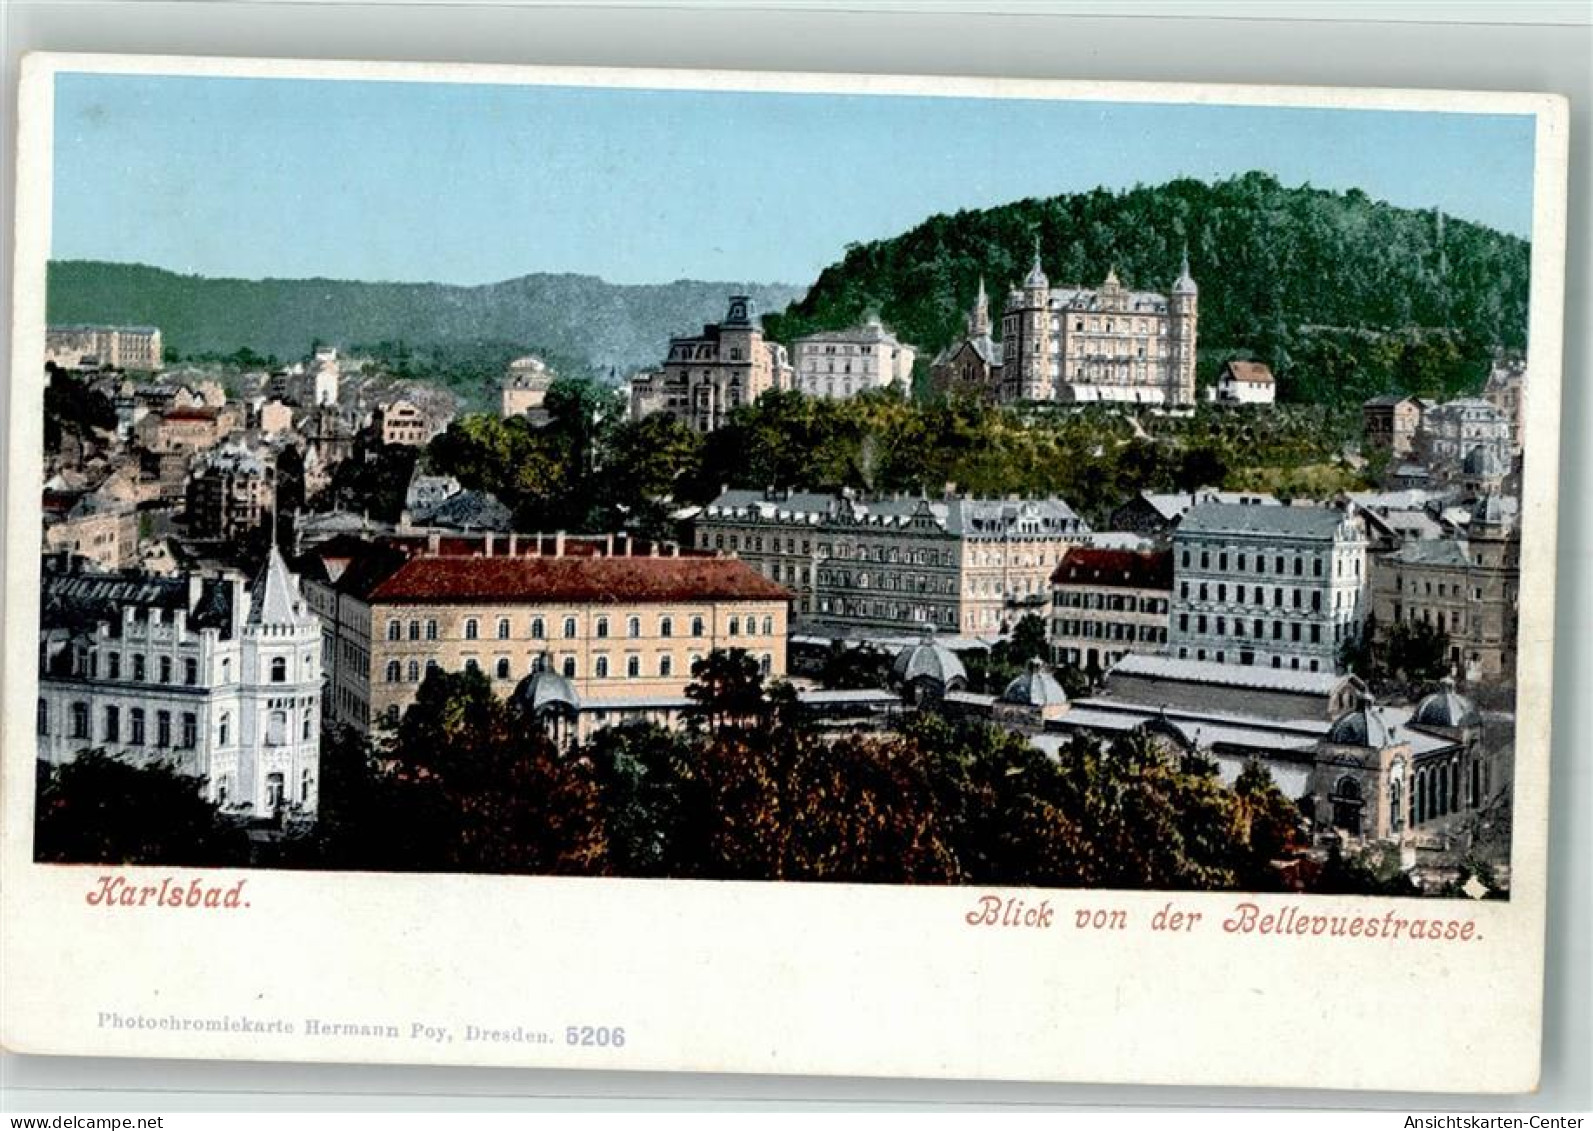 39640511 - Karlovy Vary  Karlsbad - Tschechische Republik